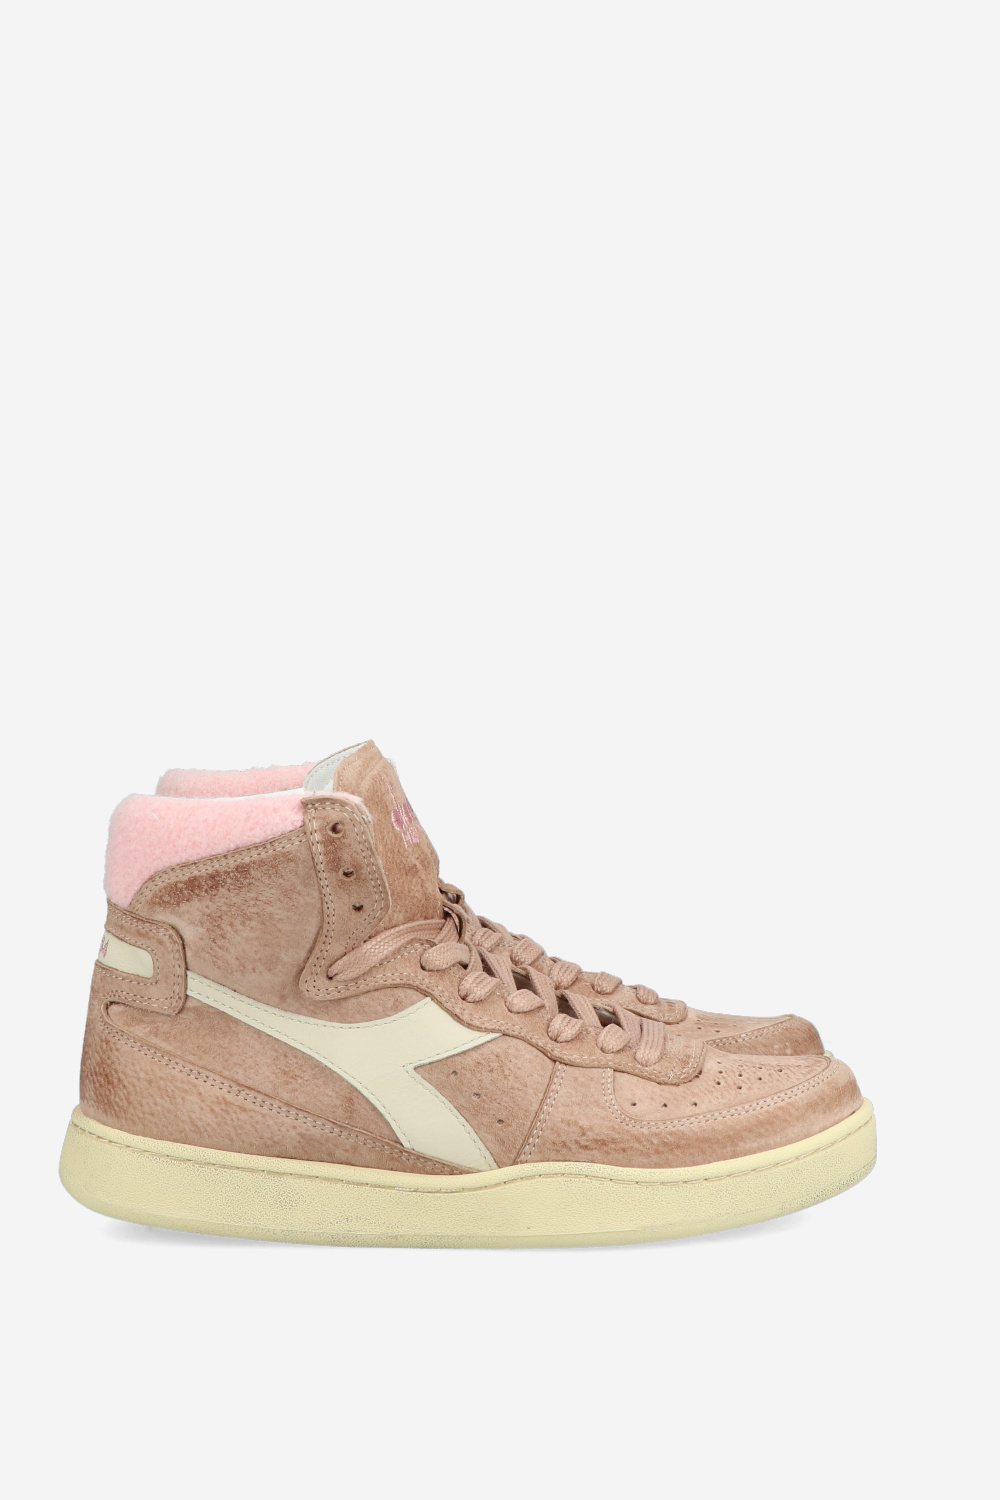 Diadora Sneakers Pink